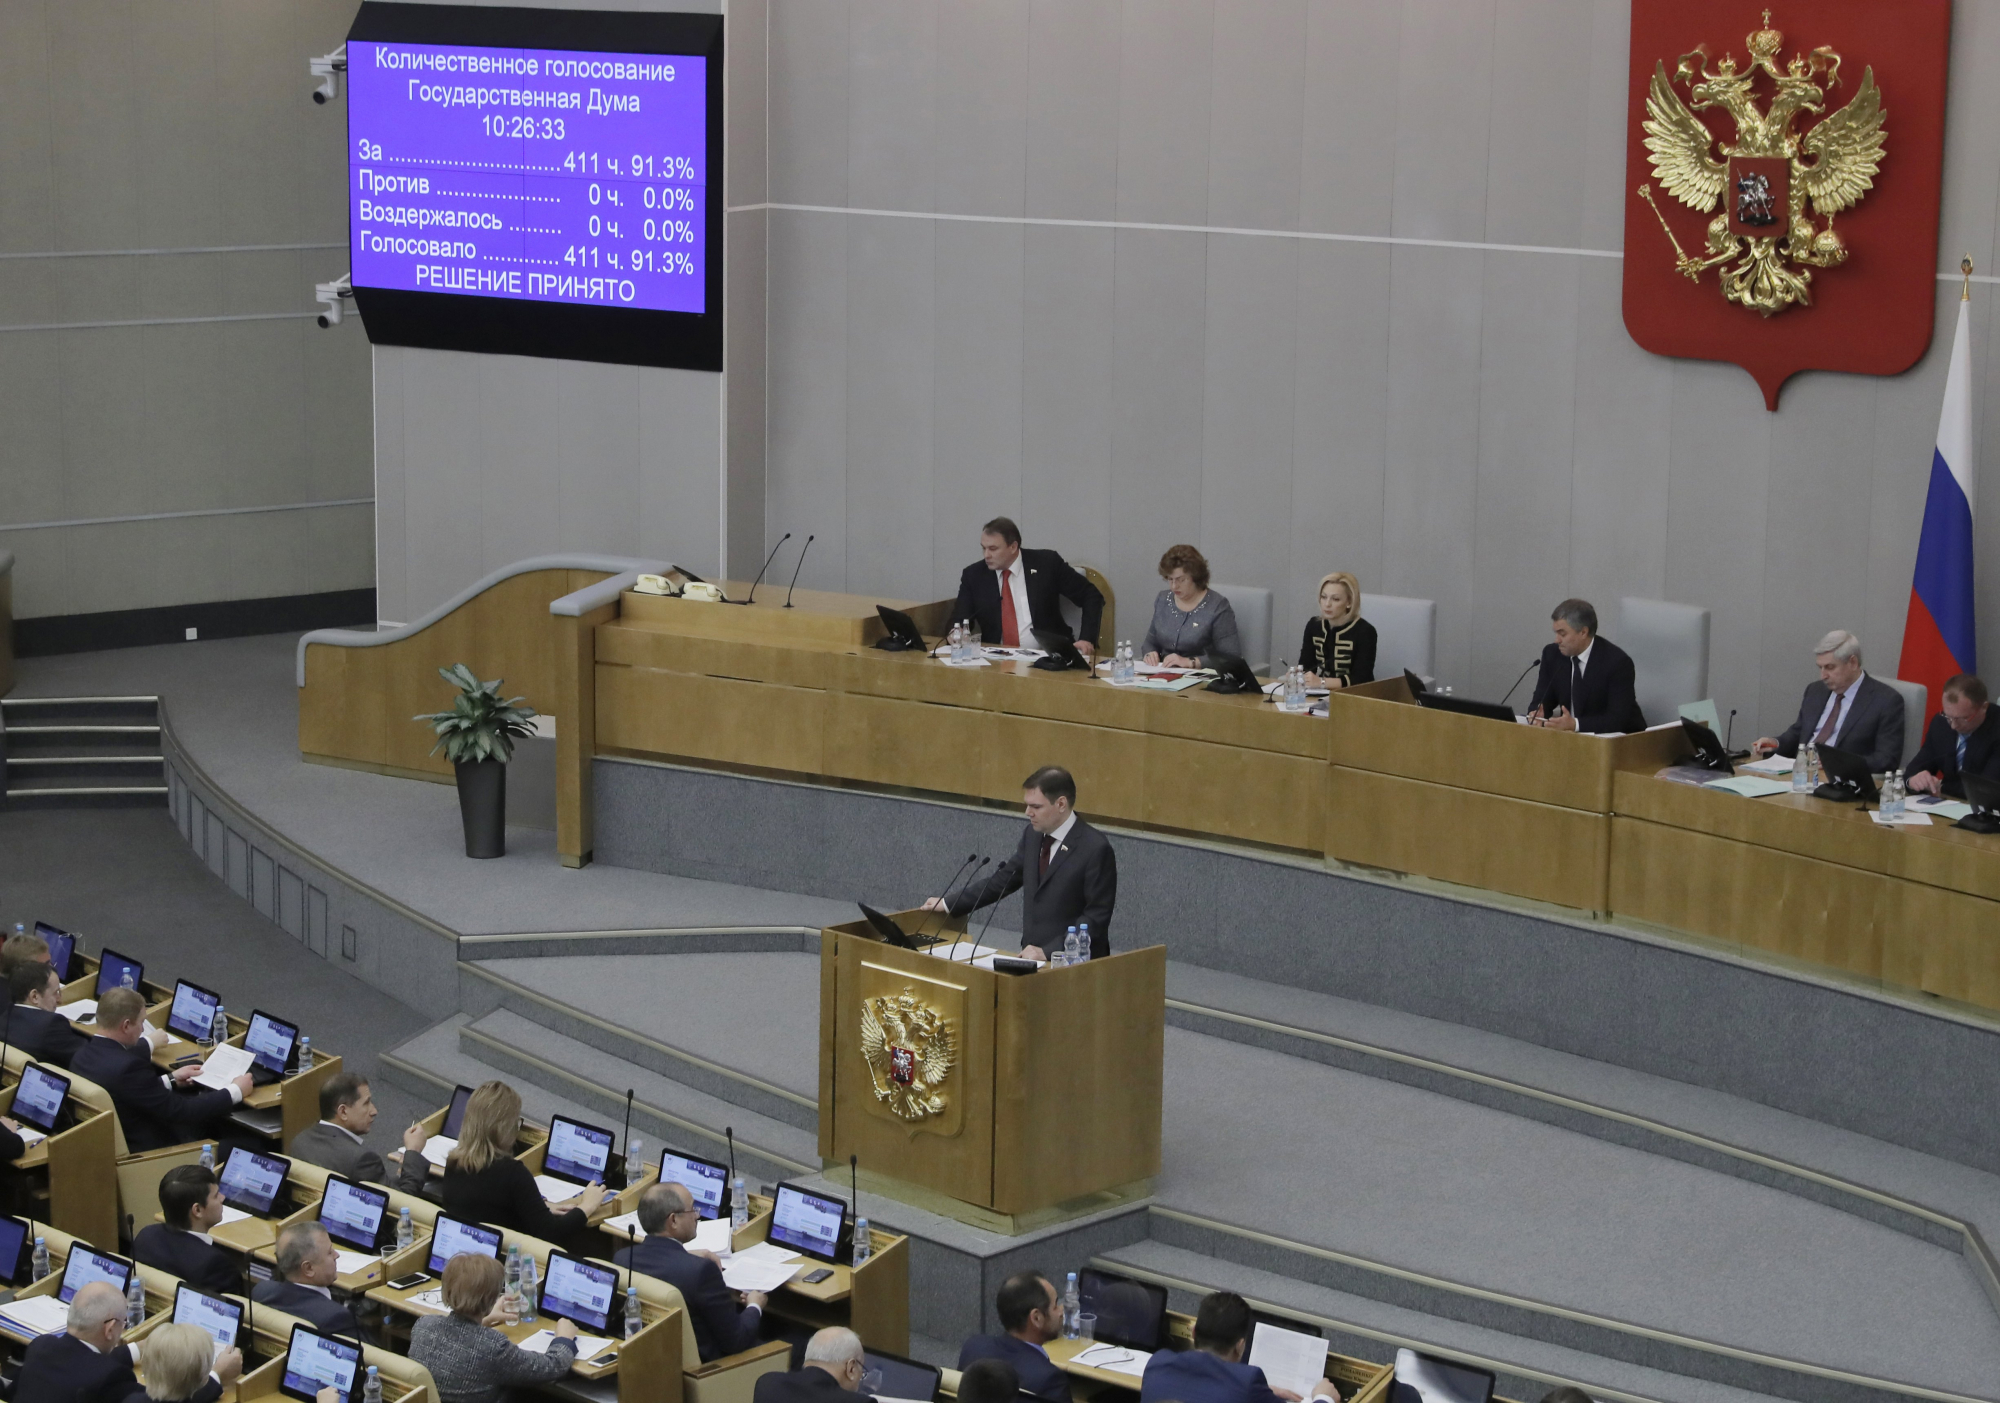 Έρχεται νόμος που θα επιτρέπει την ηλεκτρονική στρατολόγηση στην Μόσχα